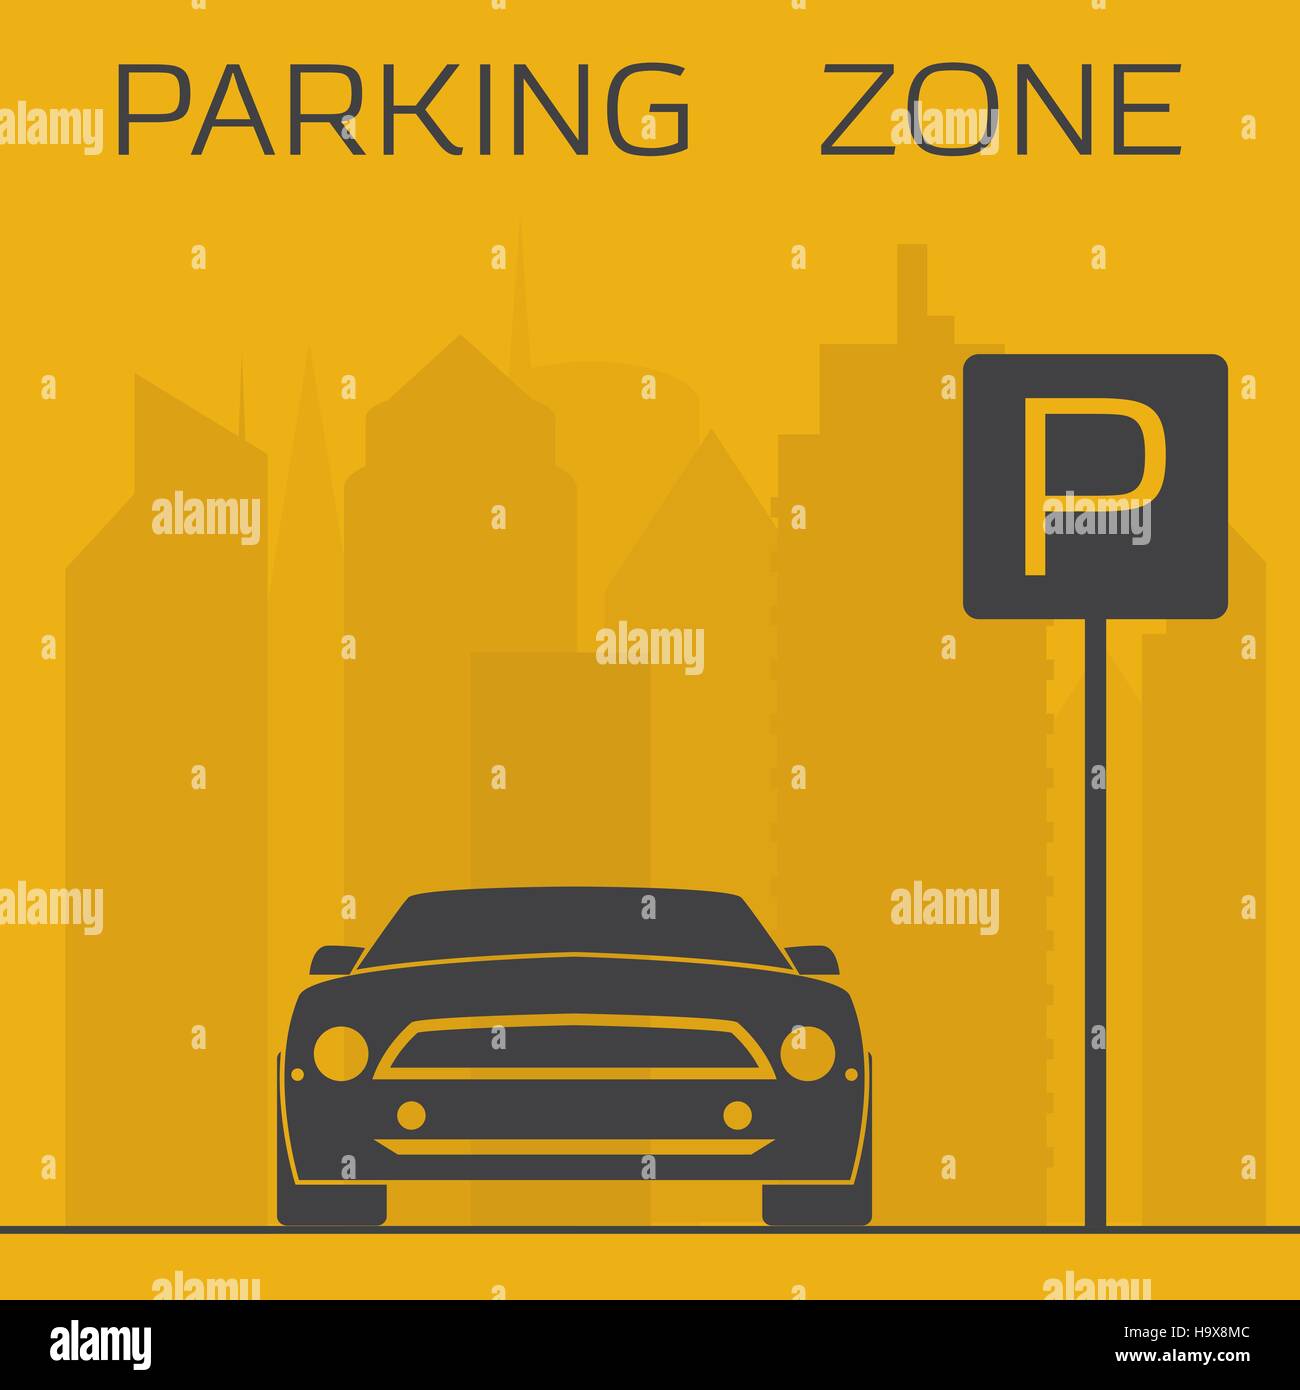 Amarillo y negro zona de aparcamiento simple ilustración. Deportivo en rascacielos de fondo cartel de estacionamiento cercano. Ilustración del Vector